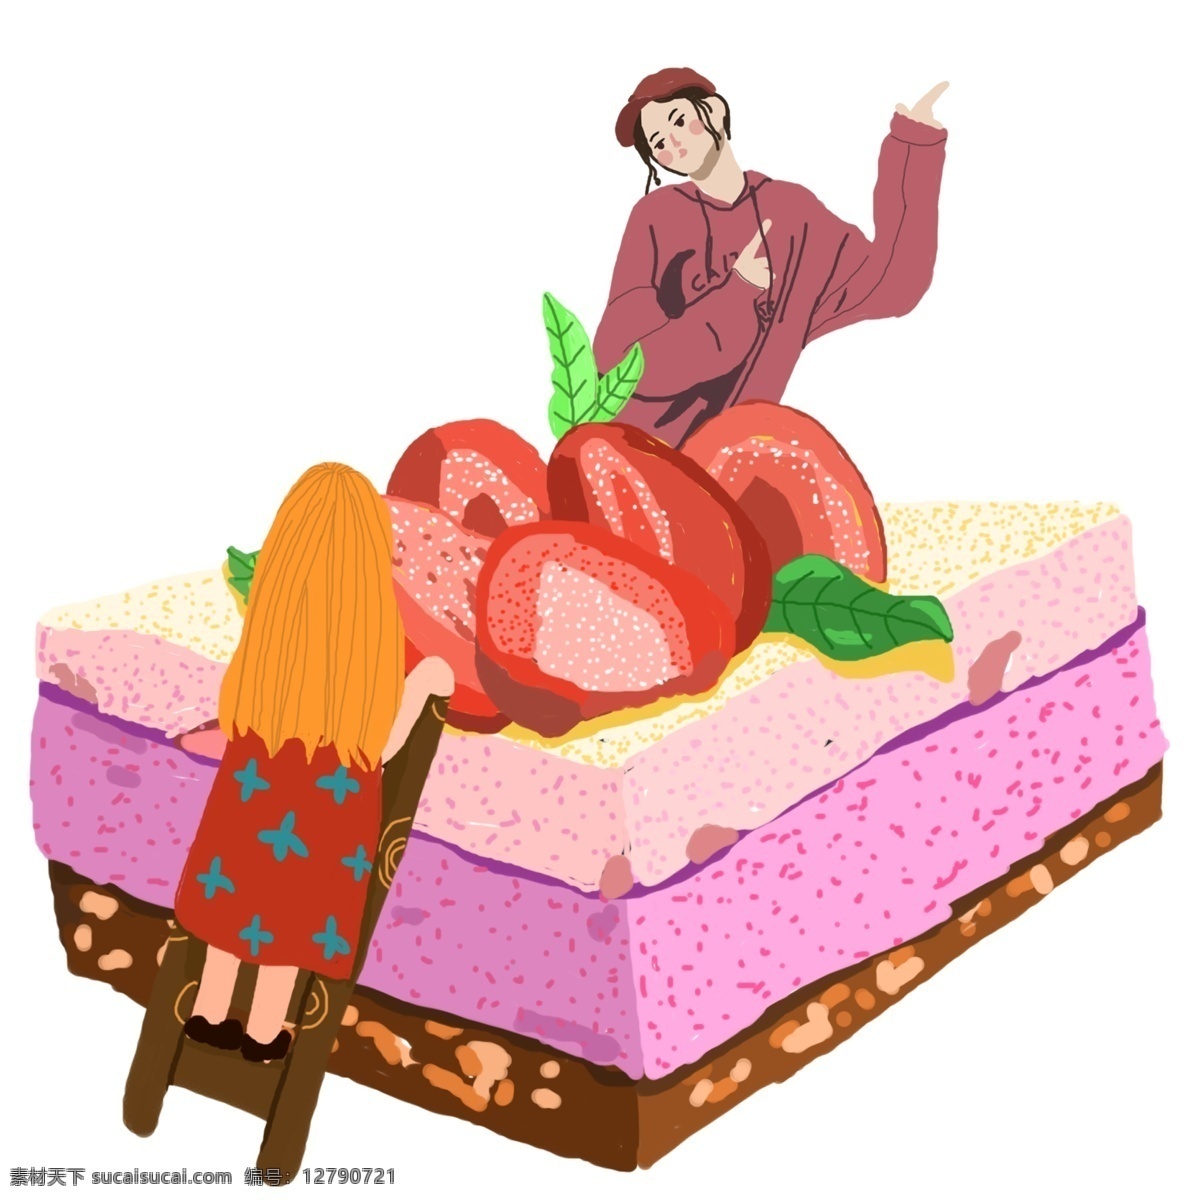 手绘 草莓 蛋糕 可爱 的卡 通 人物 美食 传统美食 卡通美食 可爱美食 美食插画 卡通 小人 手绘饮料 通人